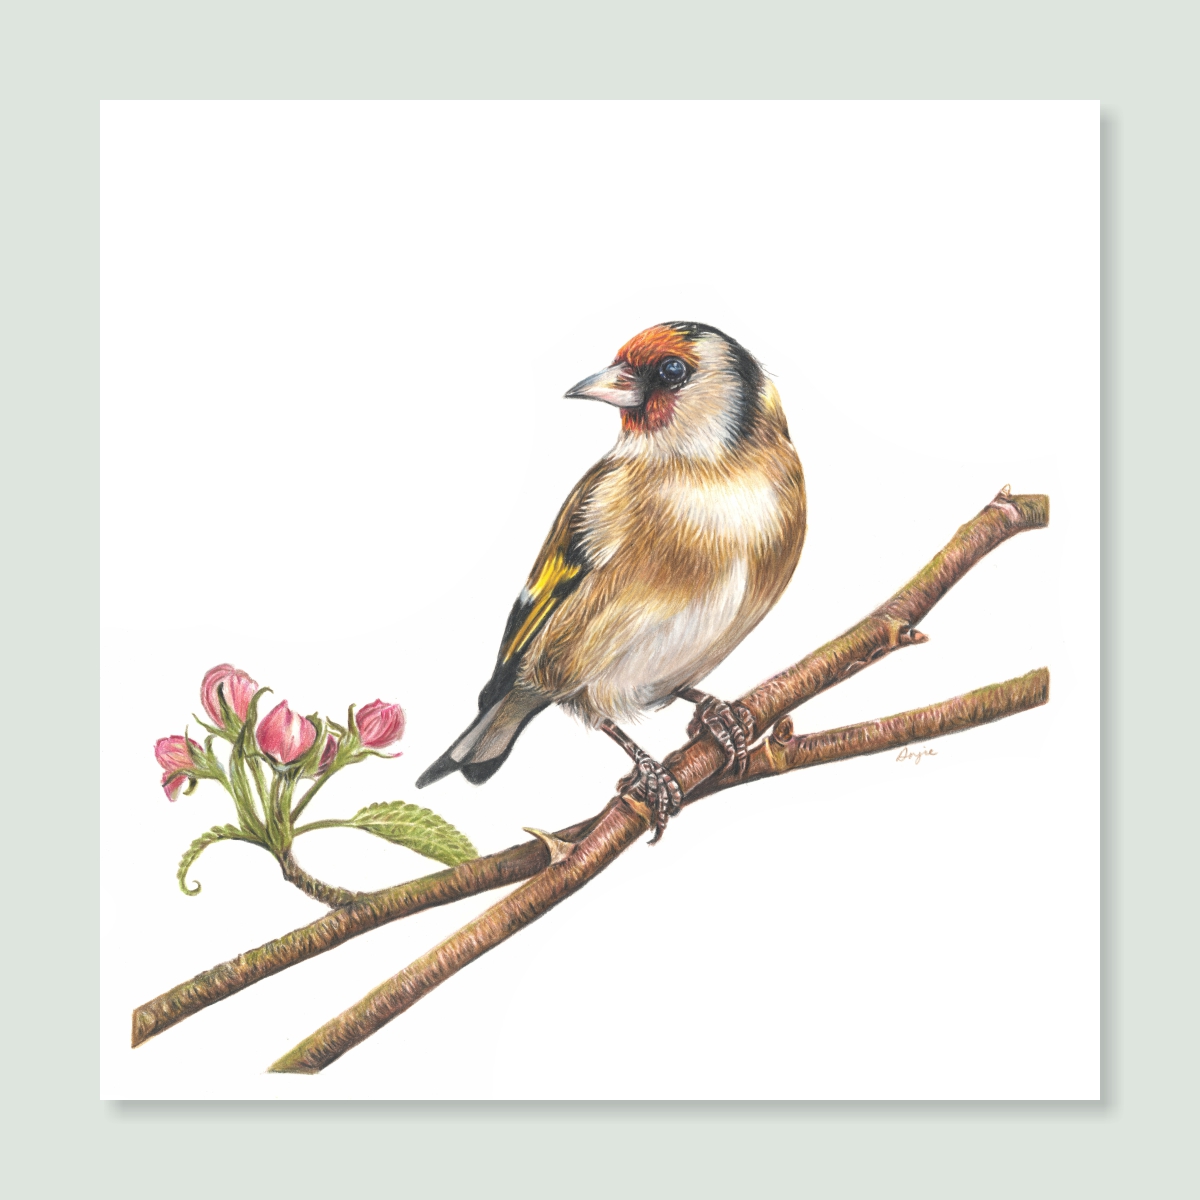 UK Garden Bird Collection - Goldfinch study by wildlife artist Angie.